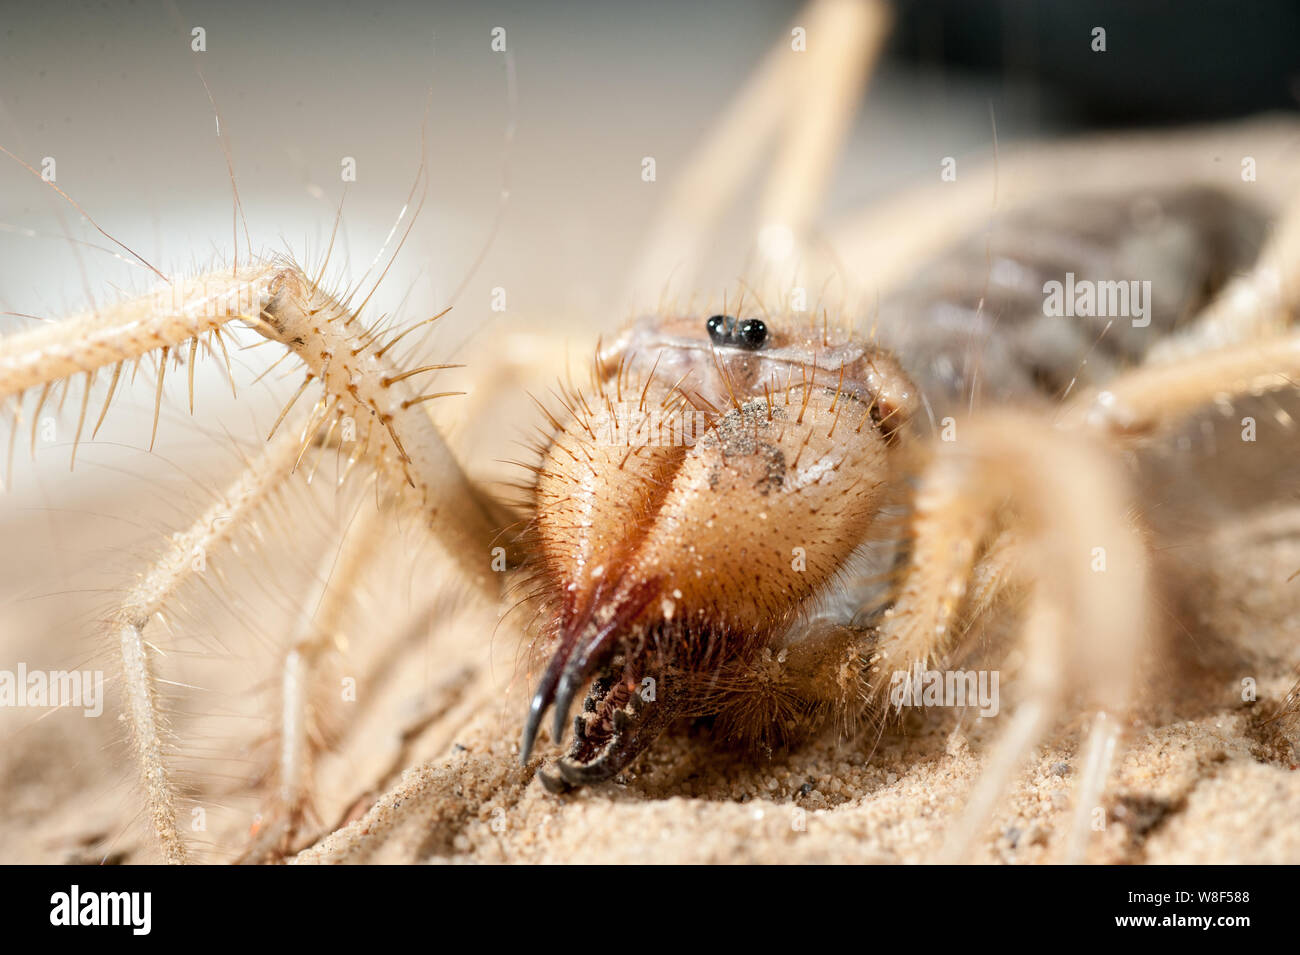 Close up of middle east wind scorpion. Dans le processus de tournage l'araignée n'a pas été blessé, et après il a été libéré dans l'environnement naturel. Banque D'Images